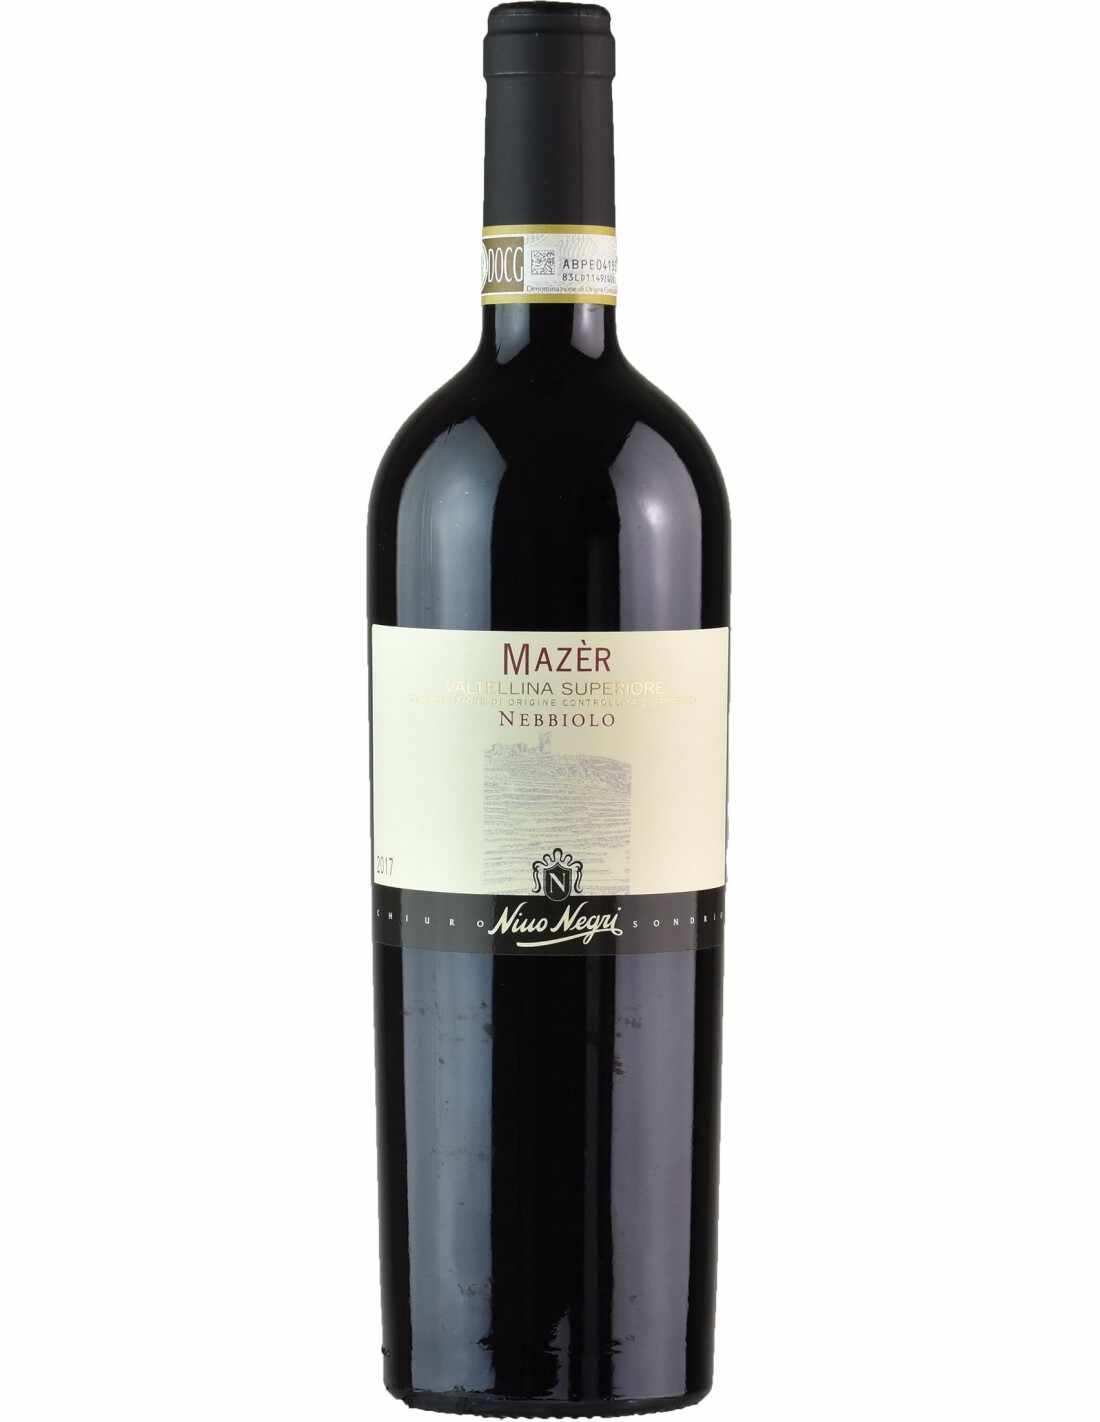 Vin rosu sec, Nebbiolo, Nino Negri Mazer Valtellina Superiore, 0.75L, 13.5% alc., Italia